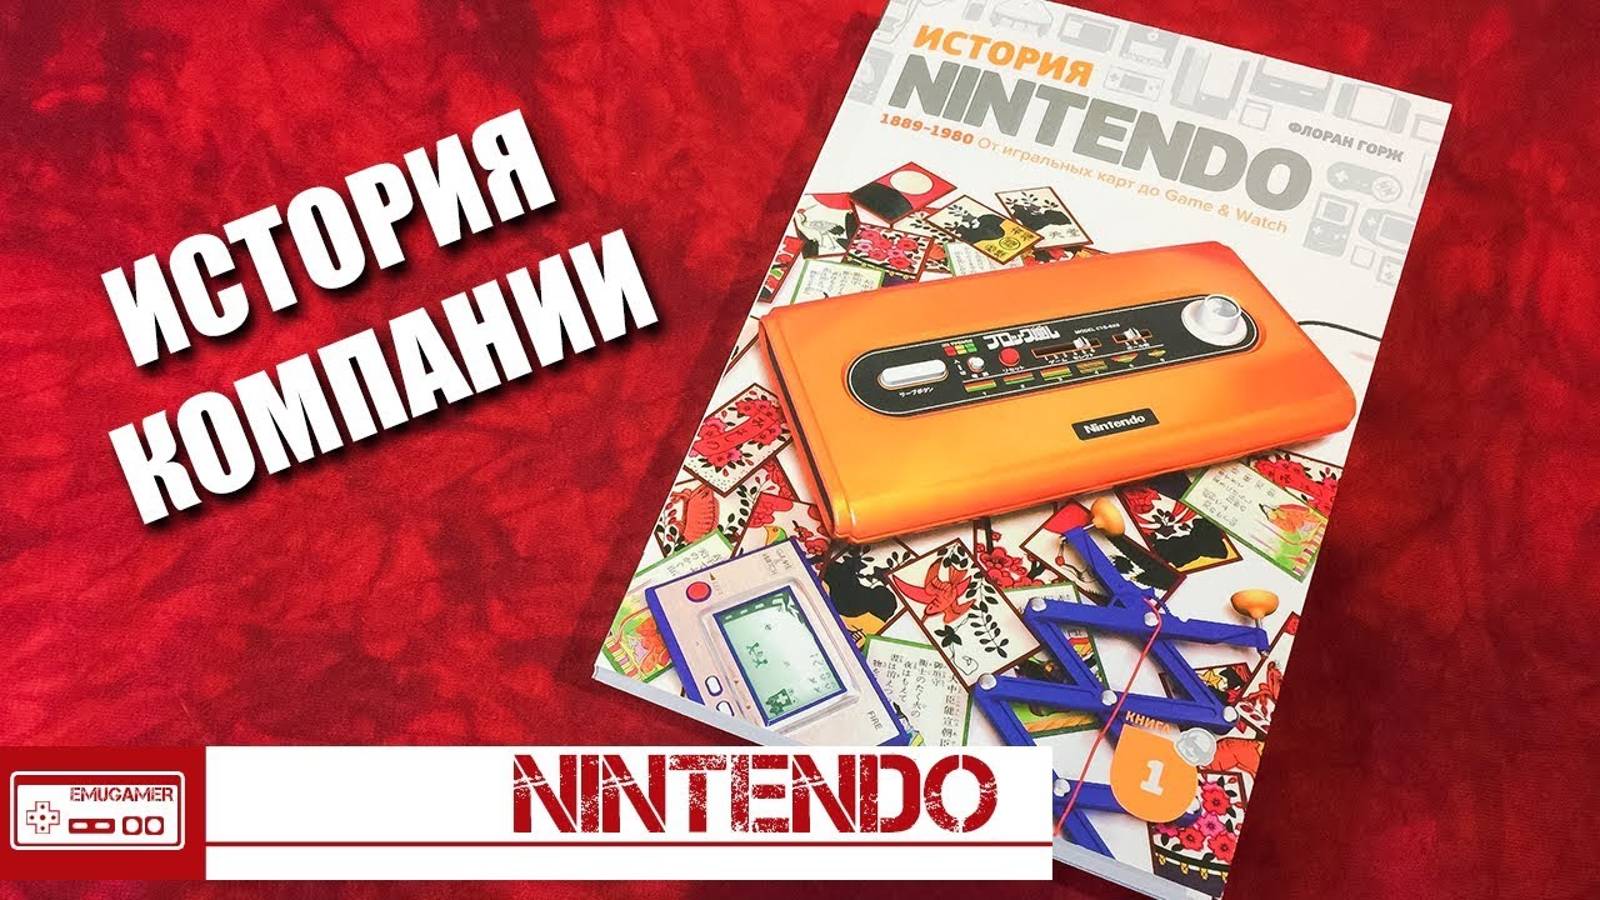 История Nintendo. Издание на русском языке! - Обзор книги